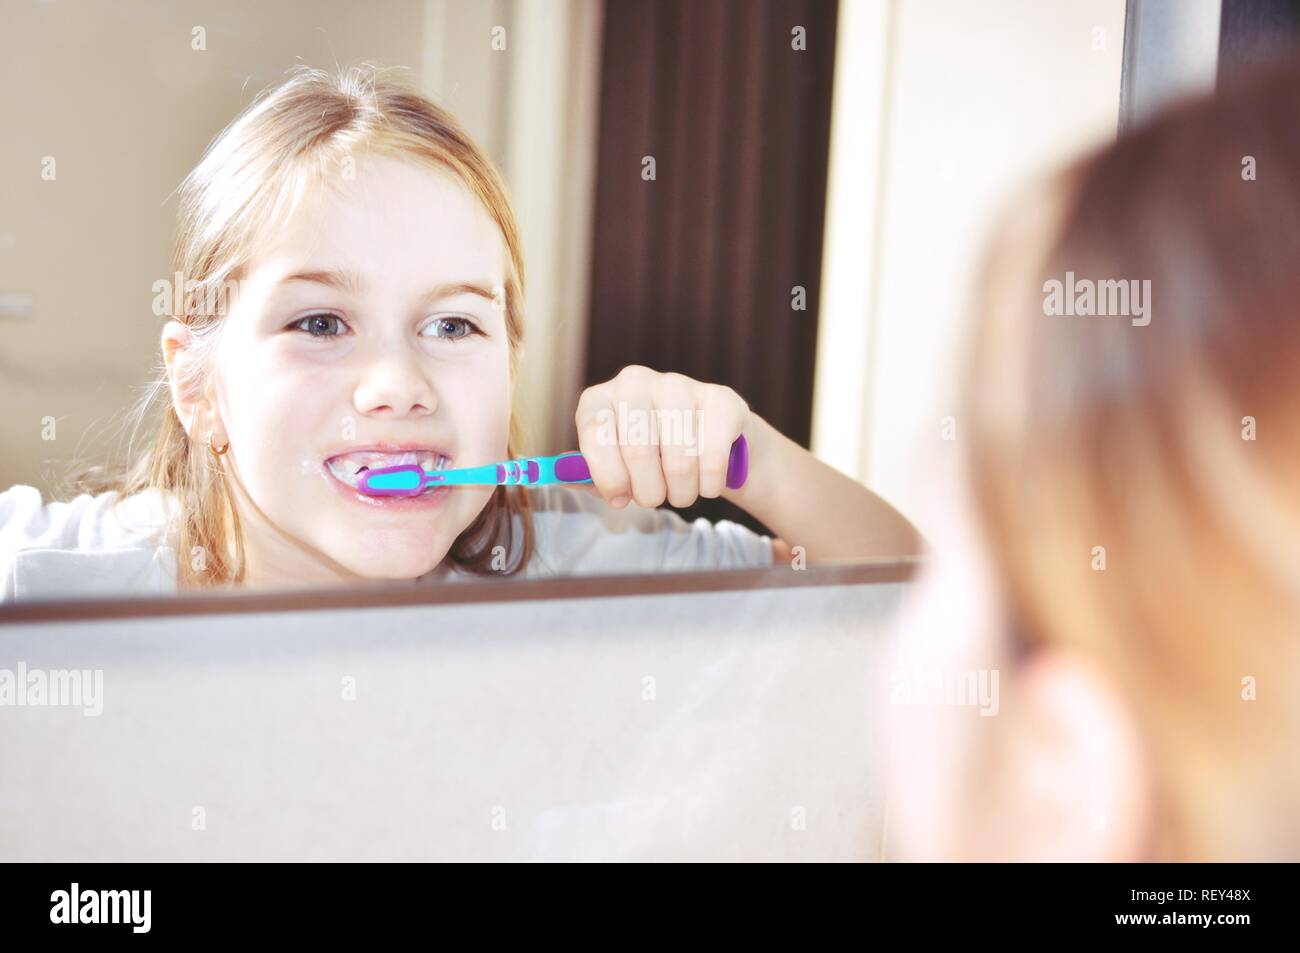 White caucasien enfant (Kid), fille, sourire et de laver ses dents avec une brosse à dents dans la salle de bains. Miroir voir. Les soins dentaires. Banque D'Images